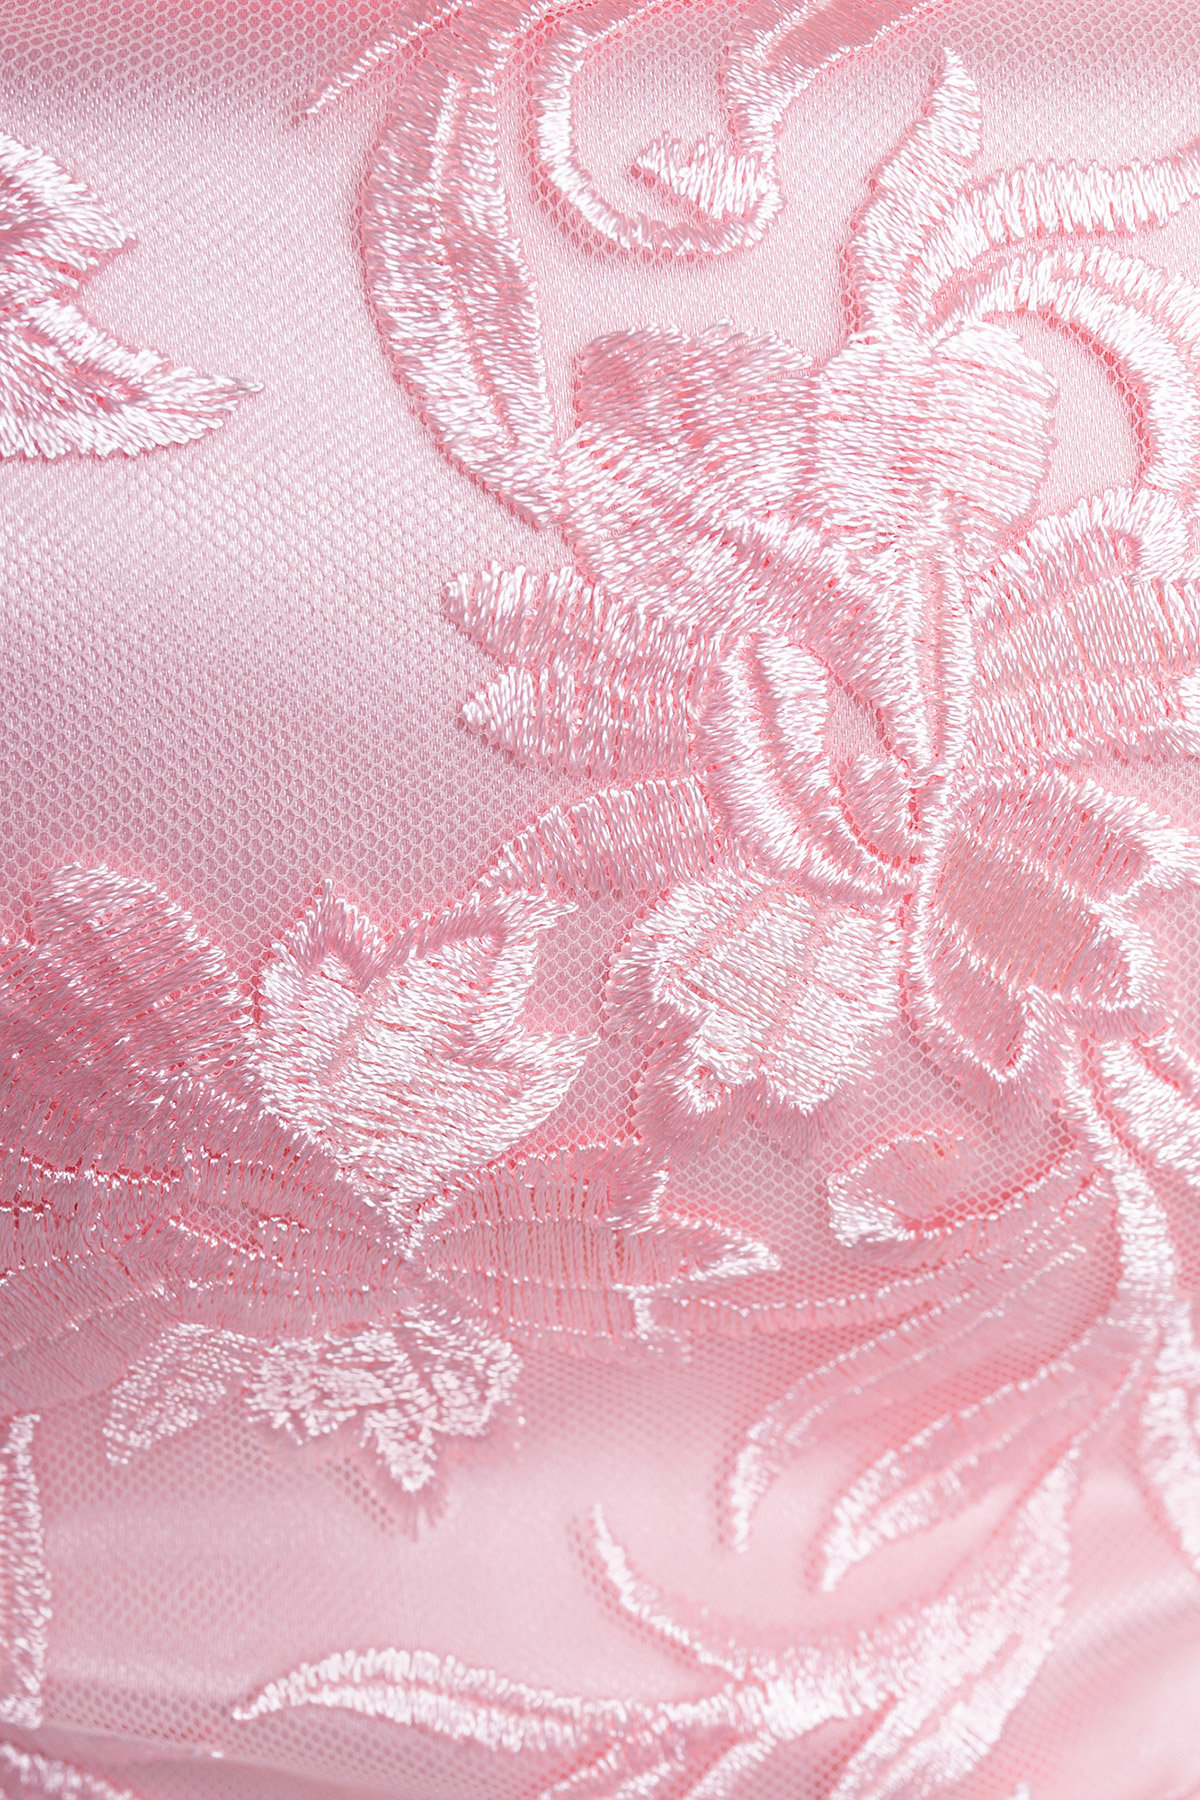 Платье Виндроуз 2919 Цвет: Розовый